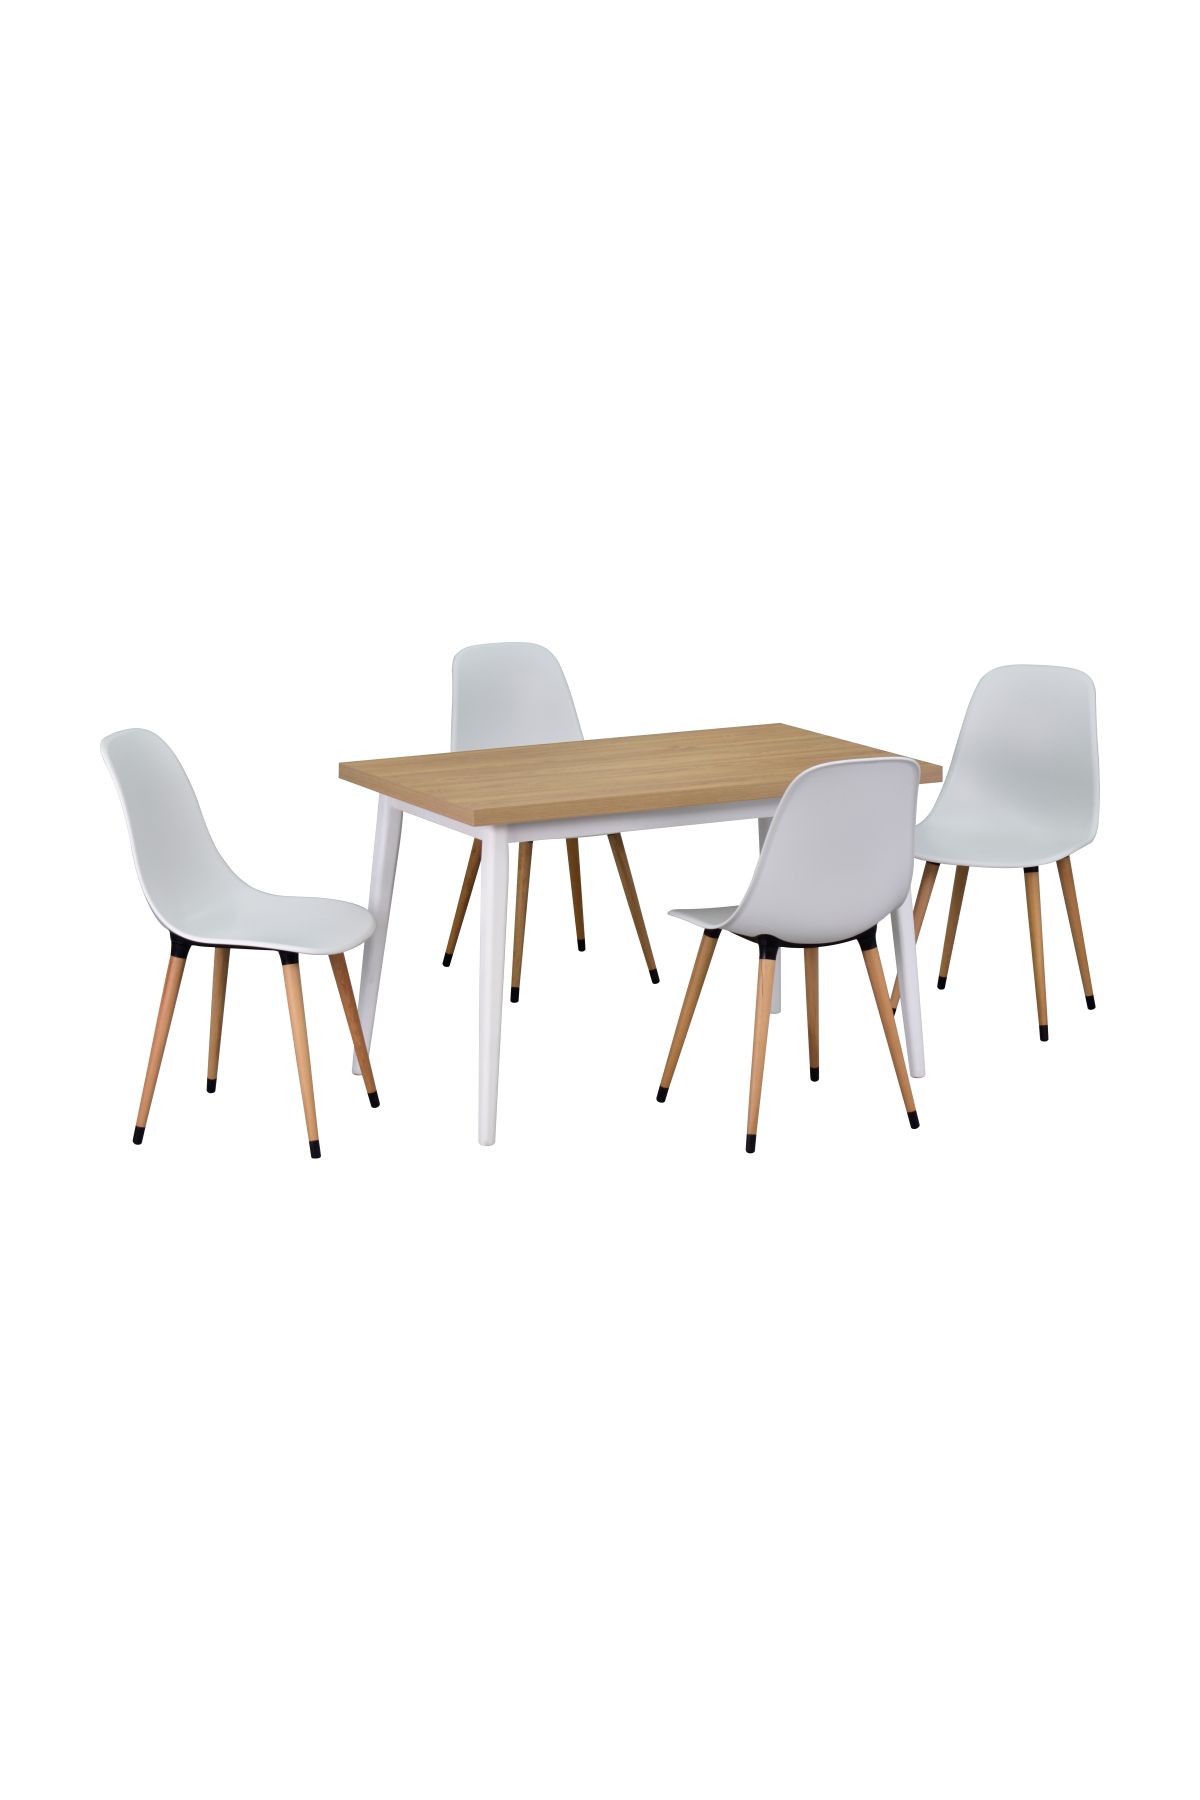 VİLİNZE Vilinze Eames Sandalye Avanos Ahşap MDF Mutfak Masası Takımı - 70x120 cm